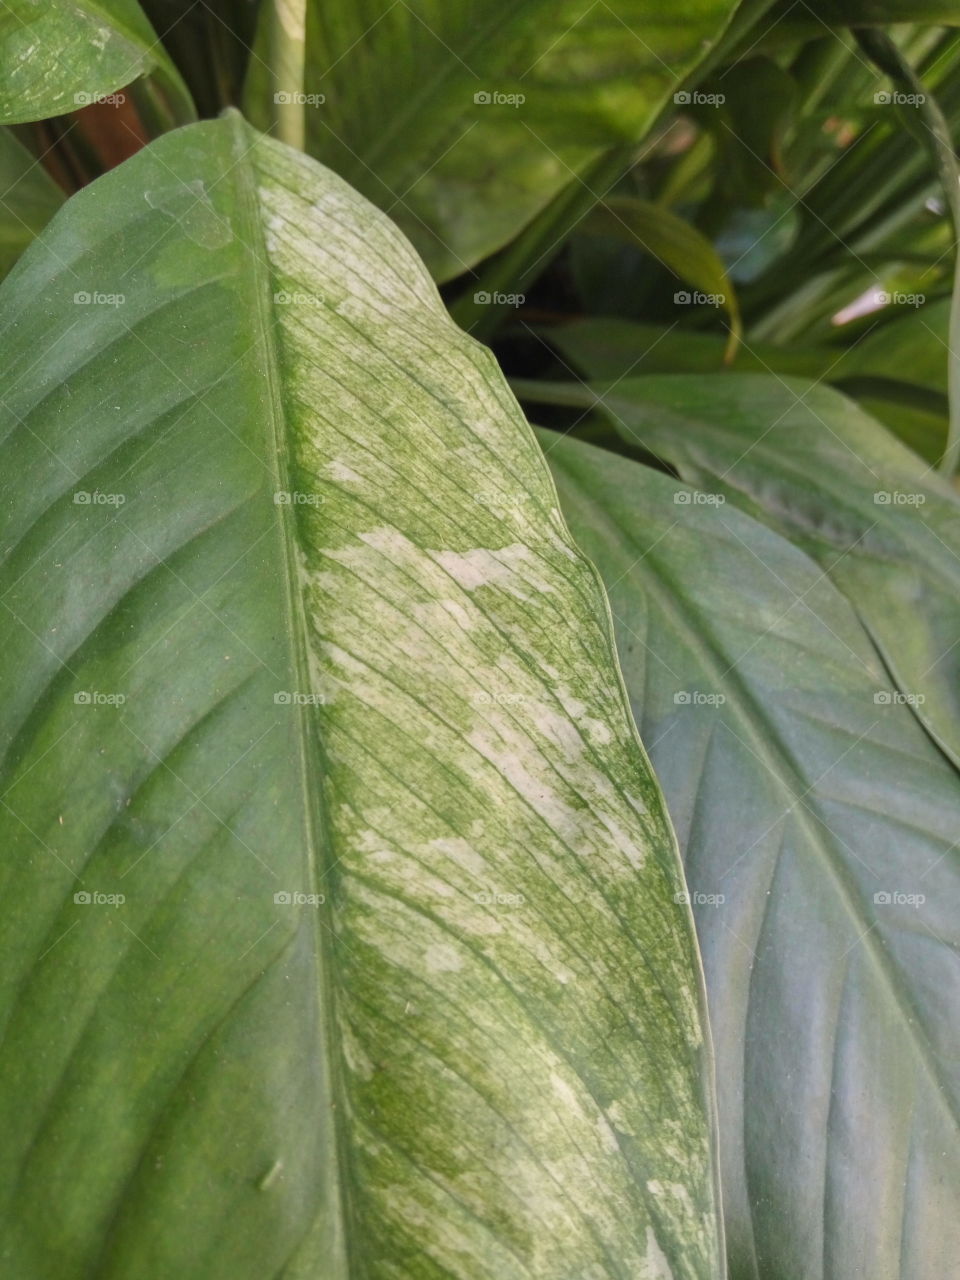 focused on 2 texture of a leaf.